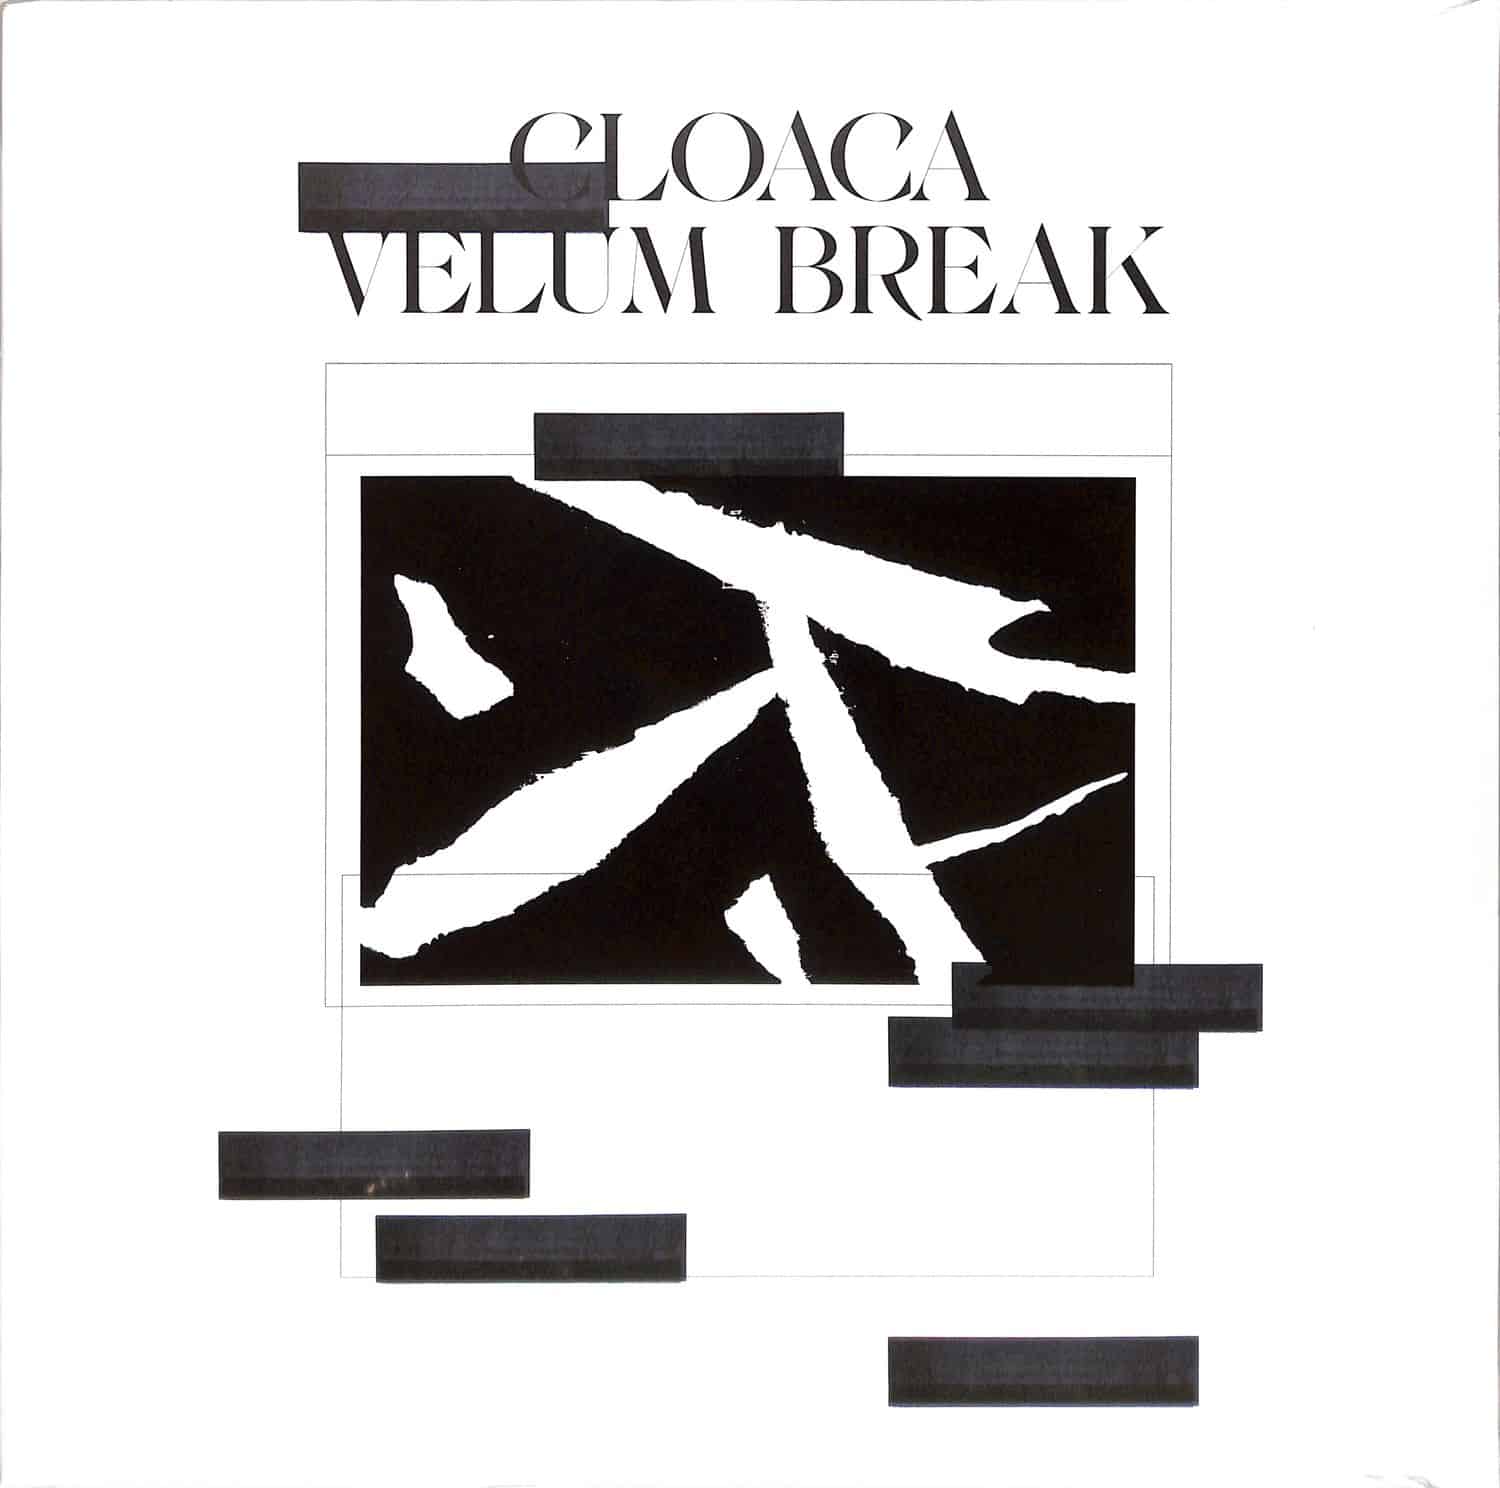 Velum Break - CLOACA EP